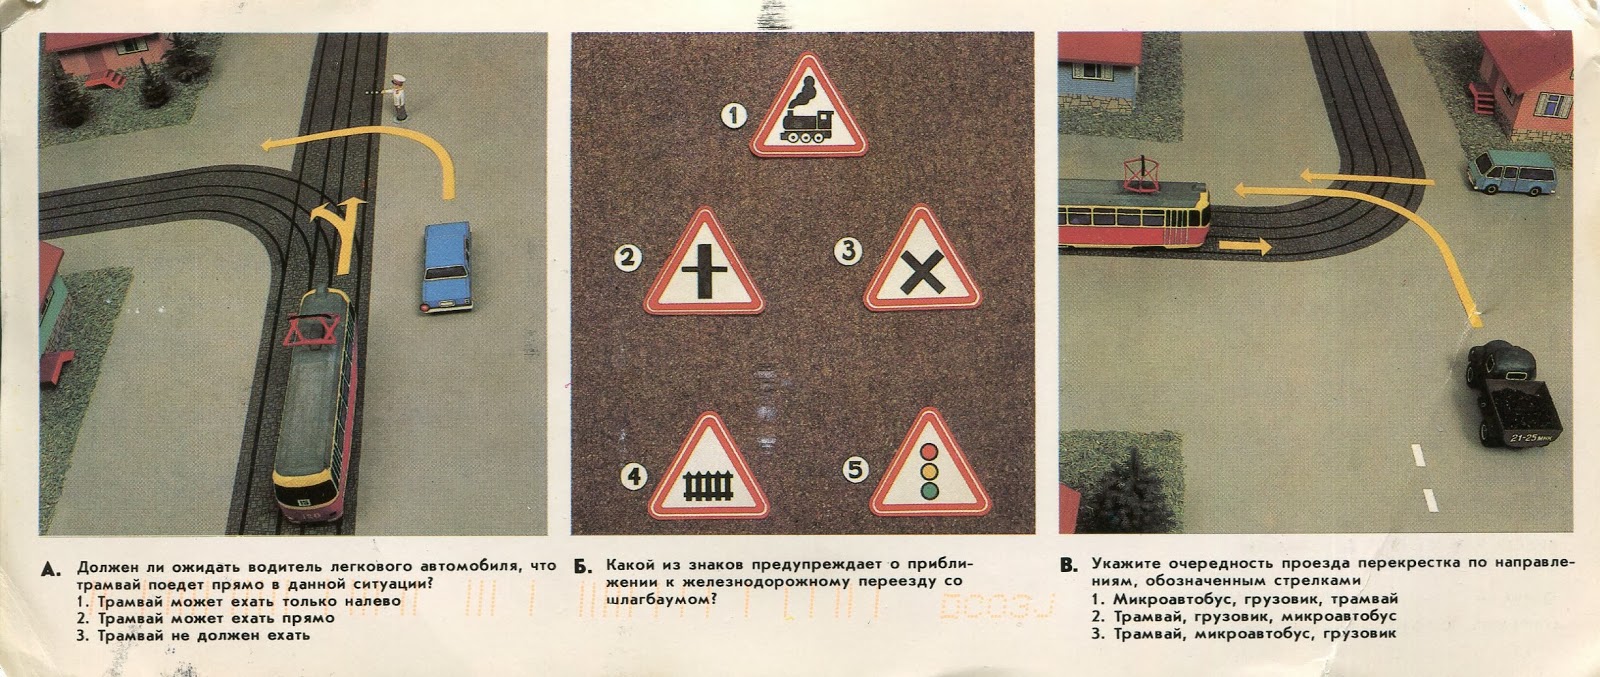 Ехай прямо правильная форма. Водитель легкового автомобиля в данной ситуации. Советская настольная игра красный, жёлтый, зелёный. Вопросы про ЖД переезд ПДД. Знаки перед железнодорожным переездом первоочередность проезда.